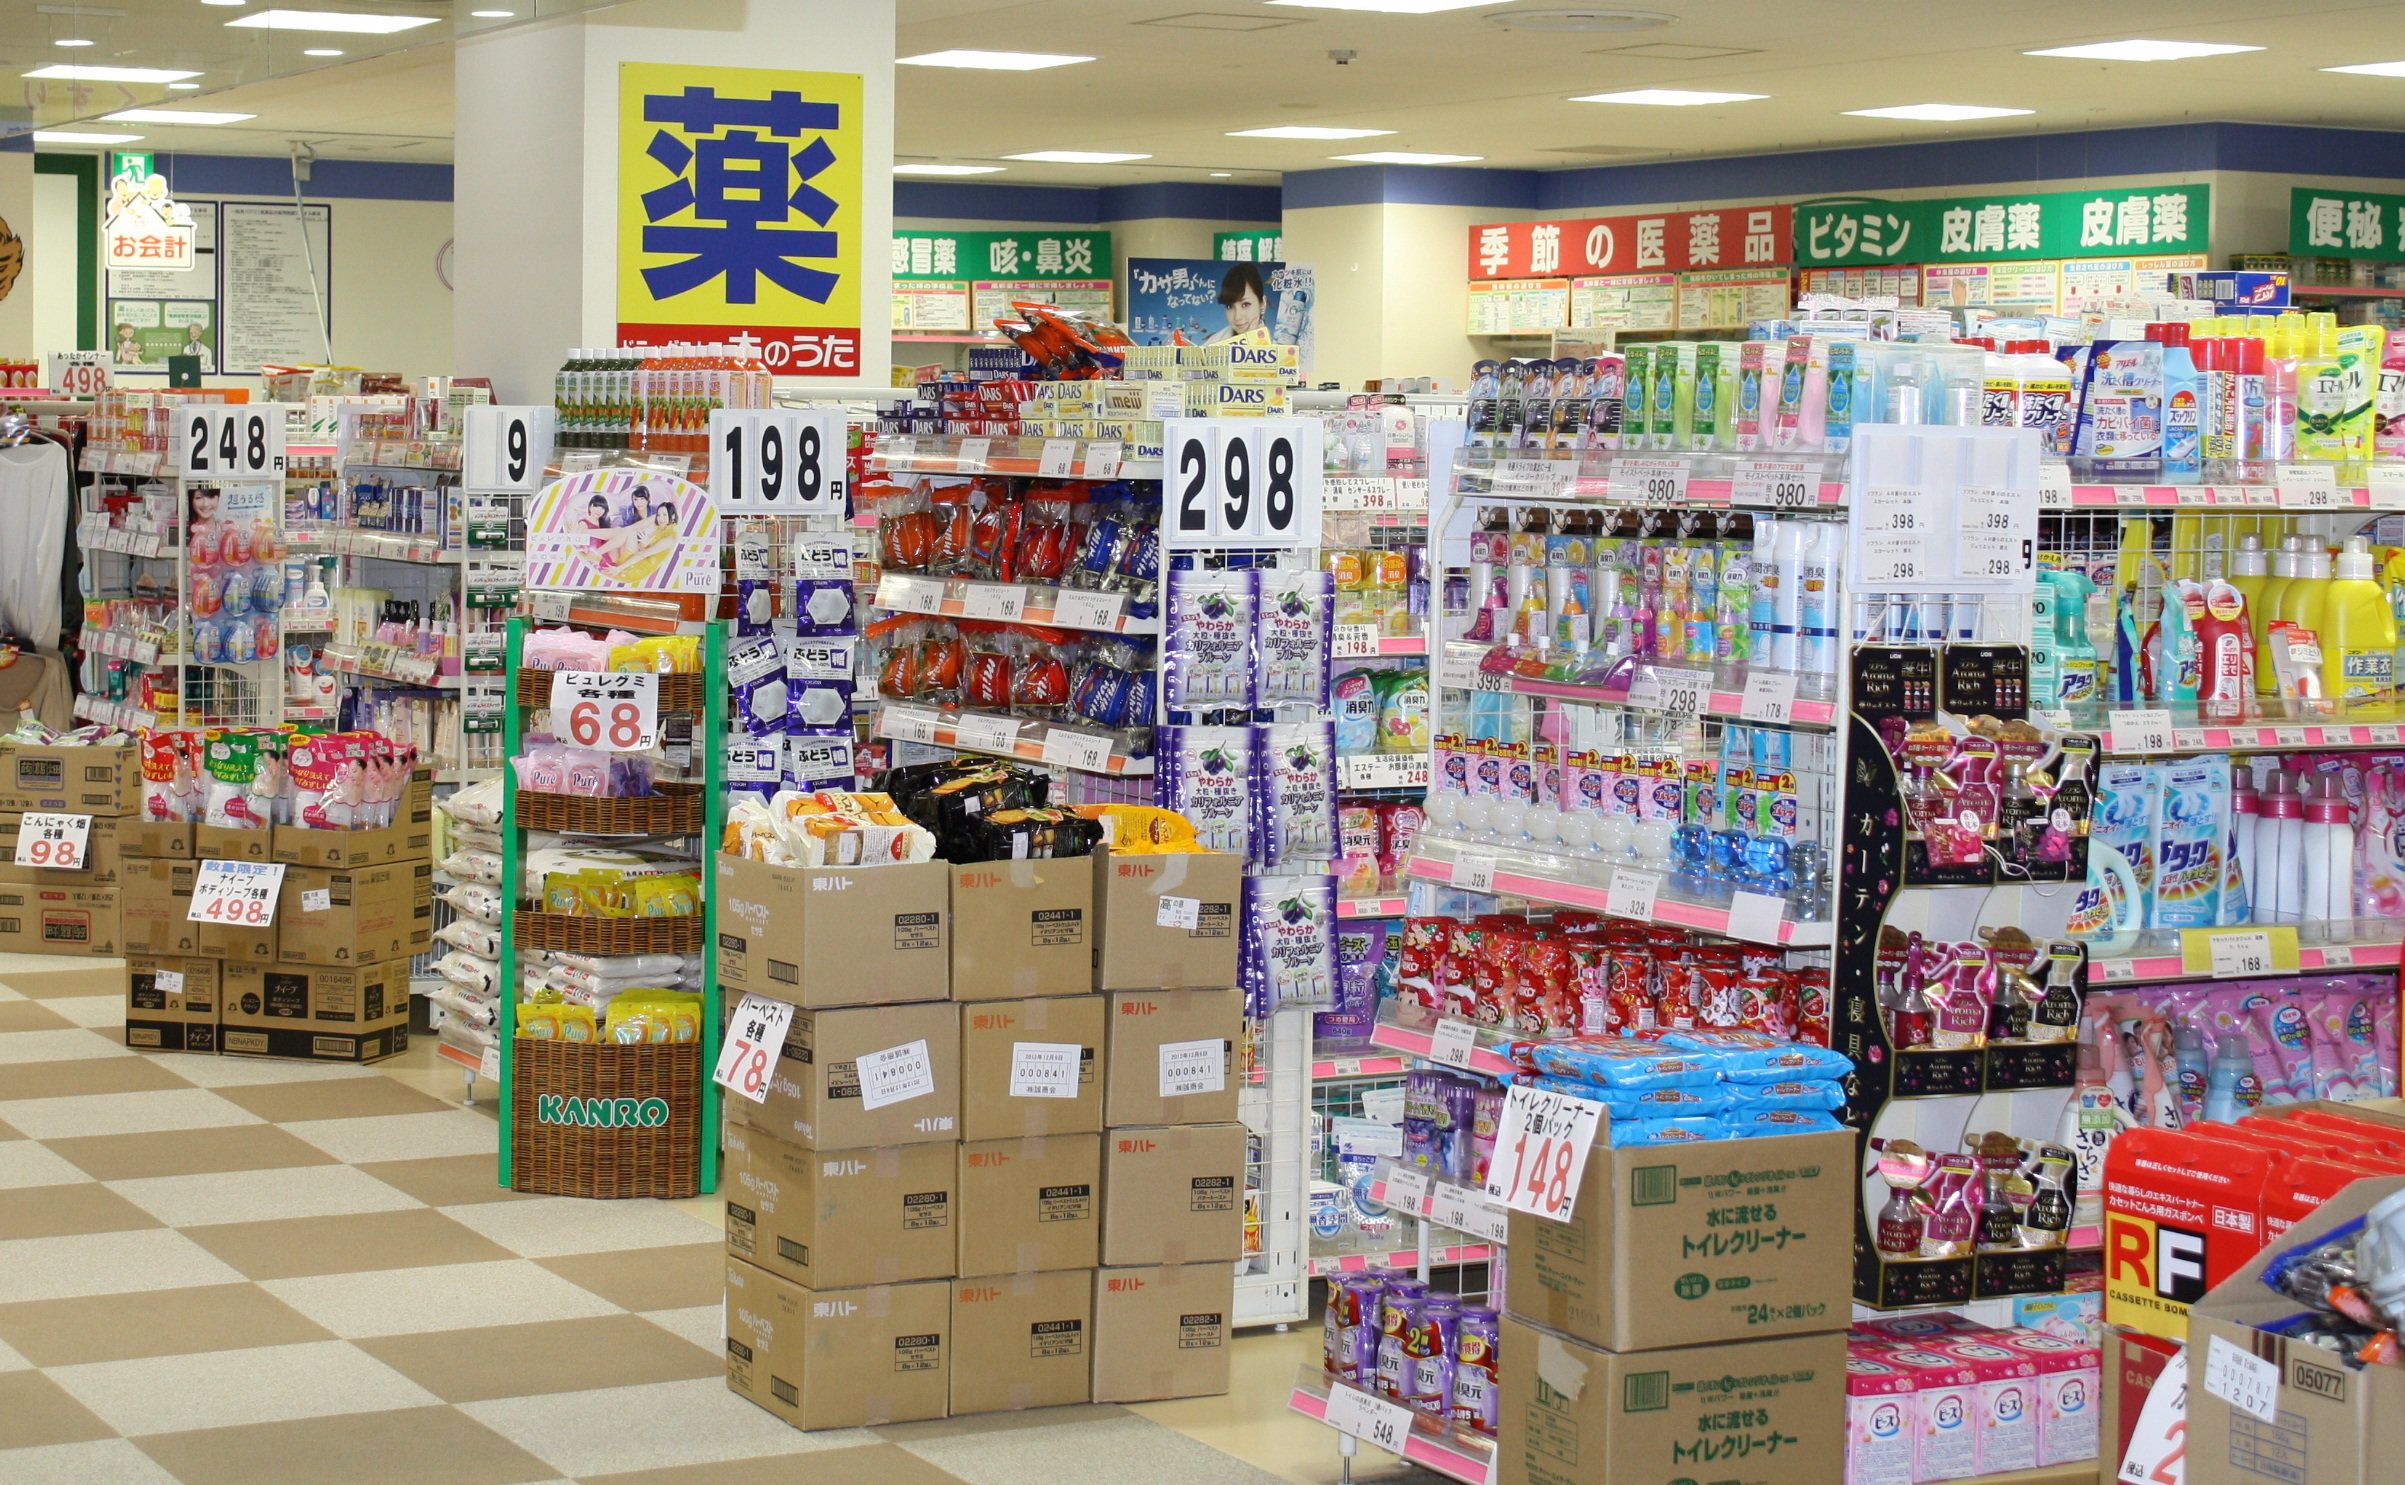 日本人逛药妆店最爱买的商品,和外国人差别这么大